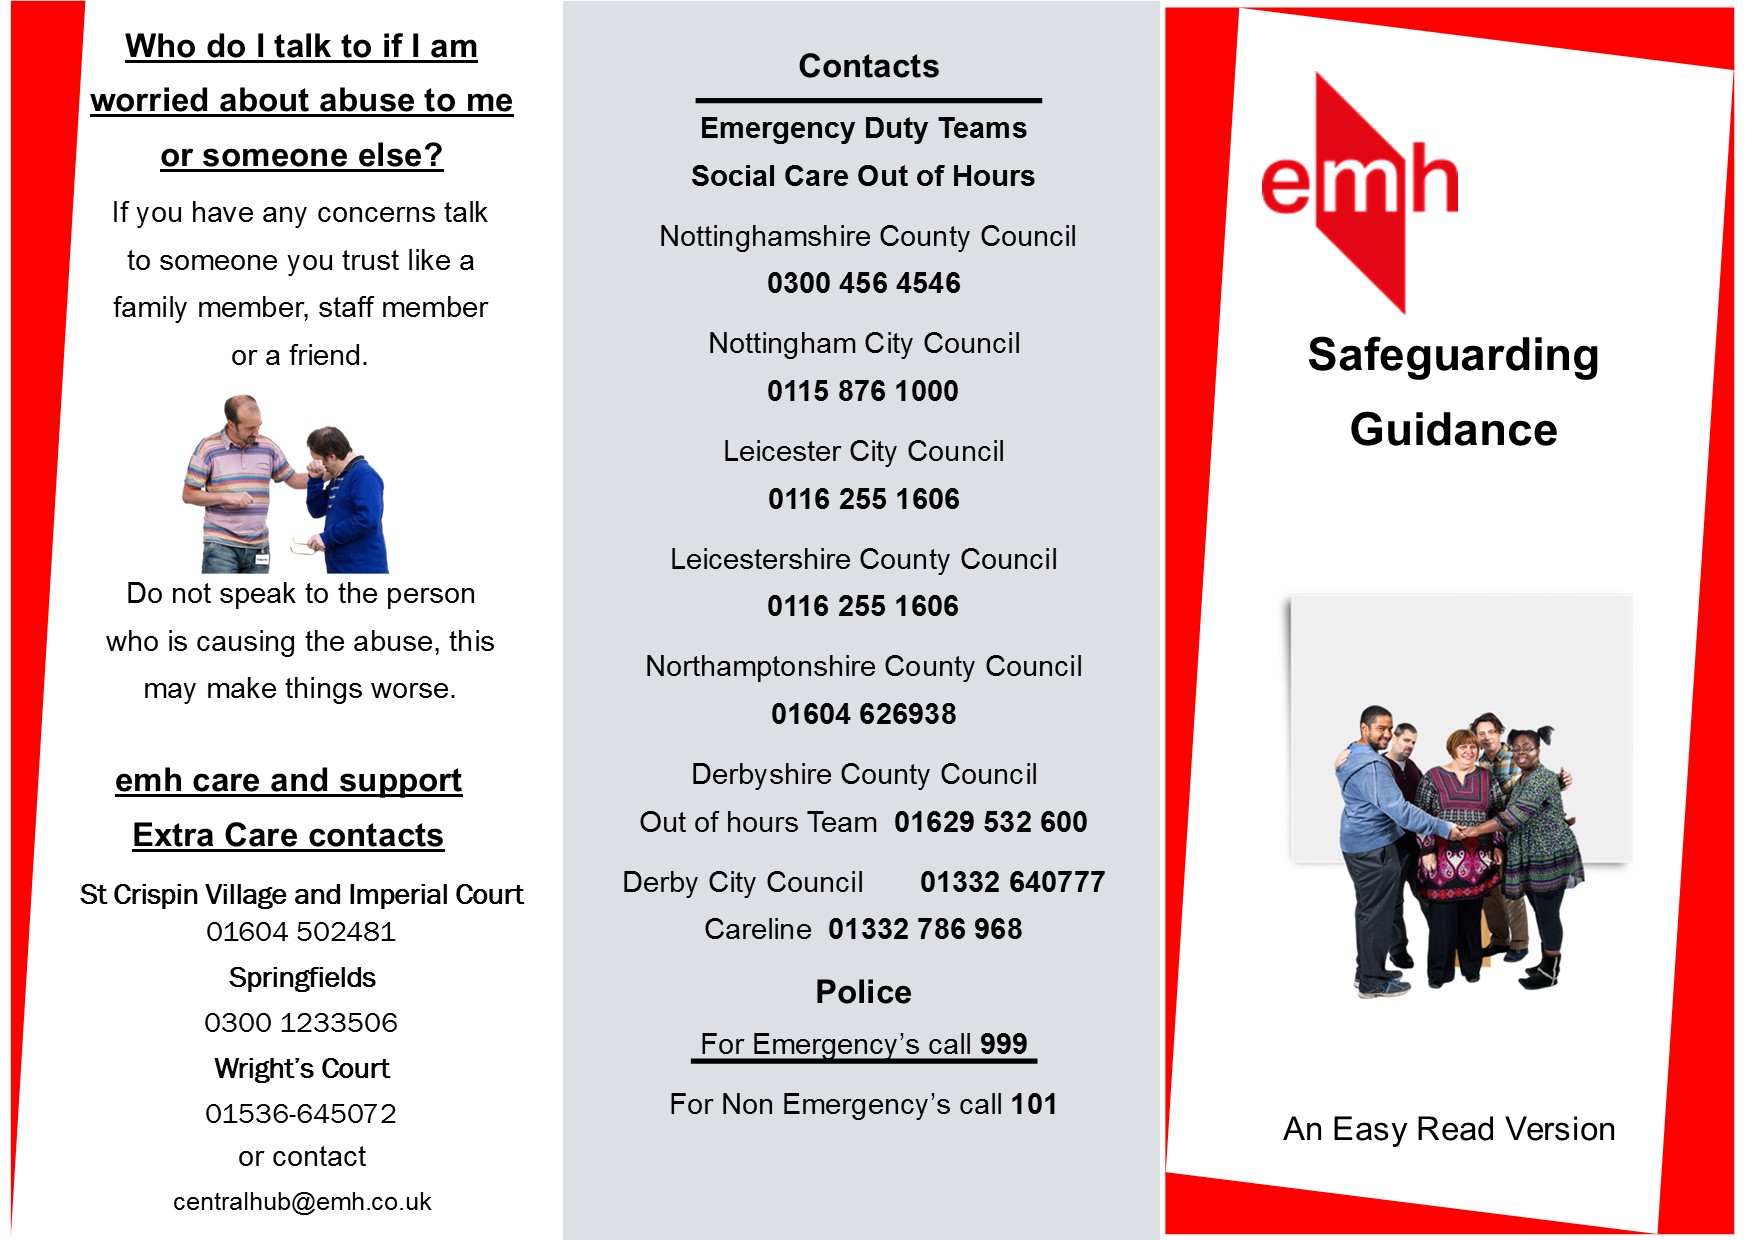 A jpg image information leaflet regarding Safeguarding extra care